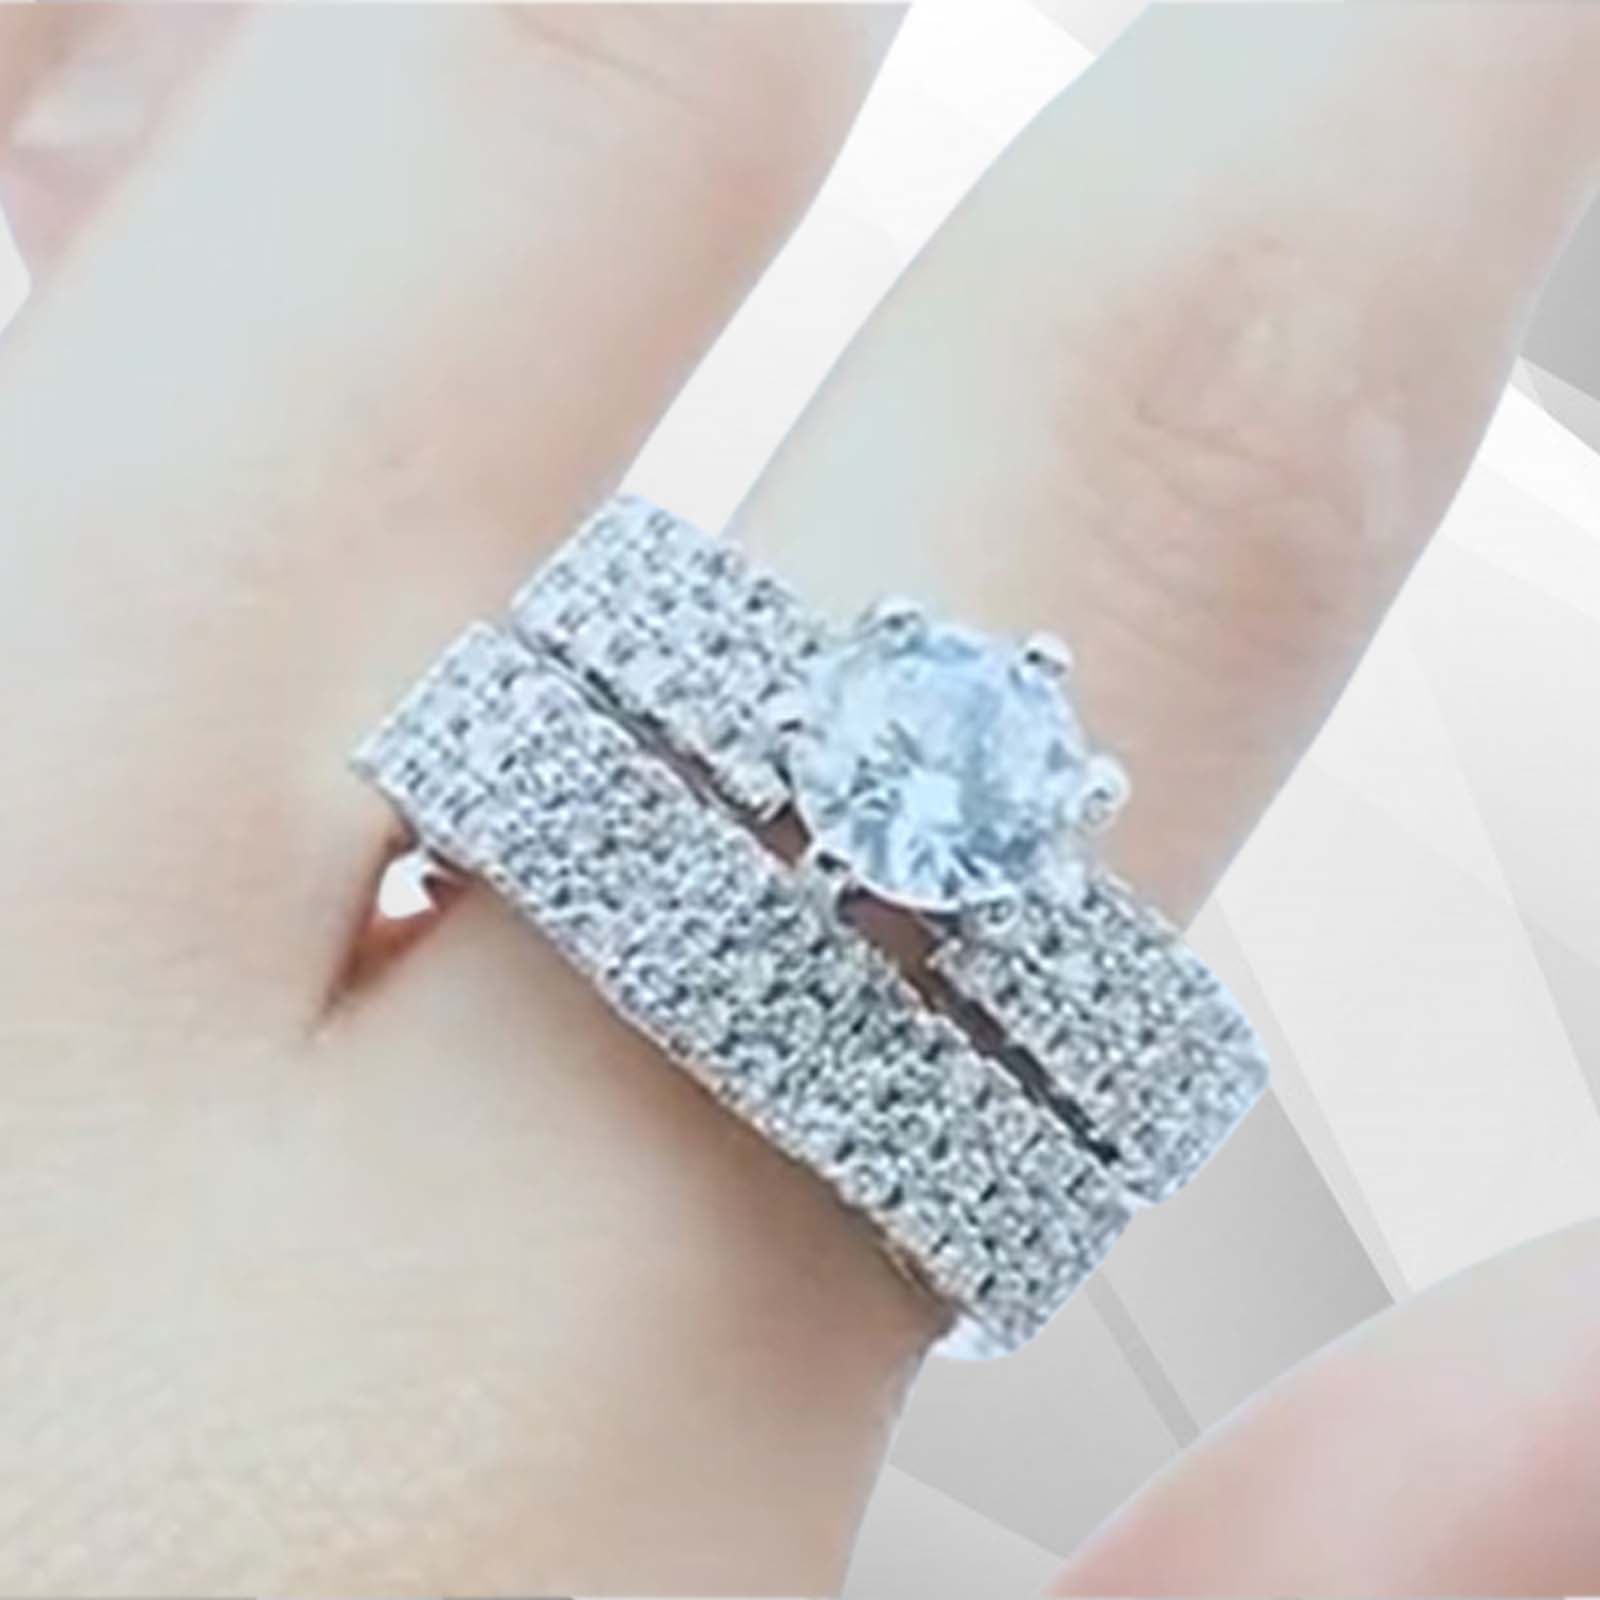 Glamorous Prong-Set Women's Engagement Ring - 2.50Ct CZ Diamond, 18Ct White Gold, Free Shipping Bijou Her